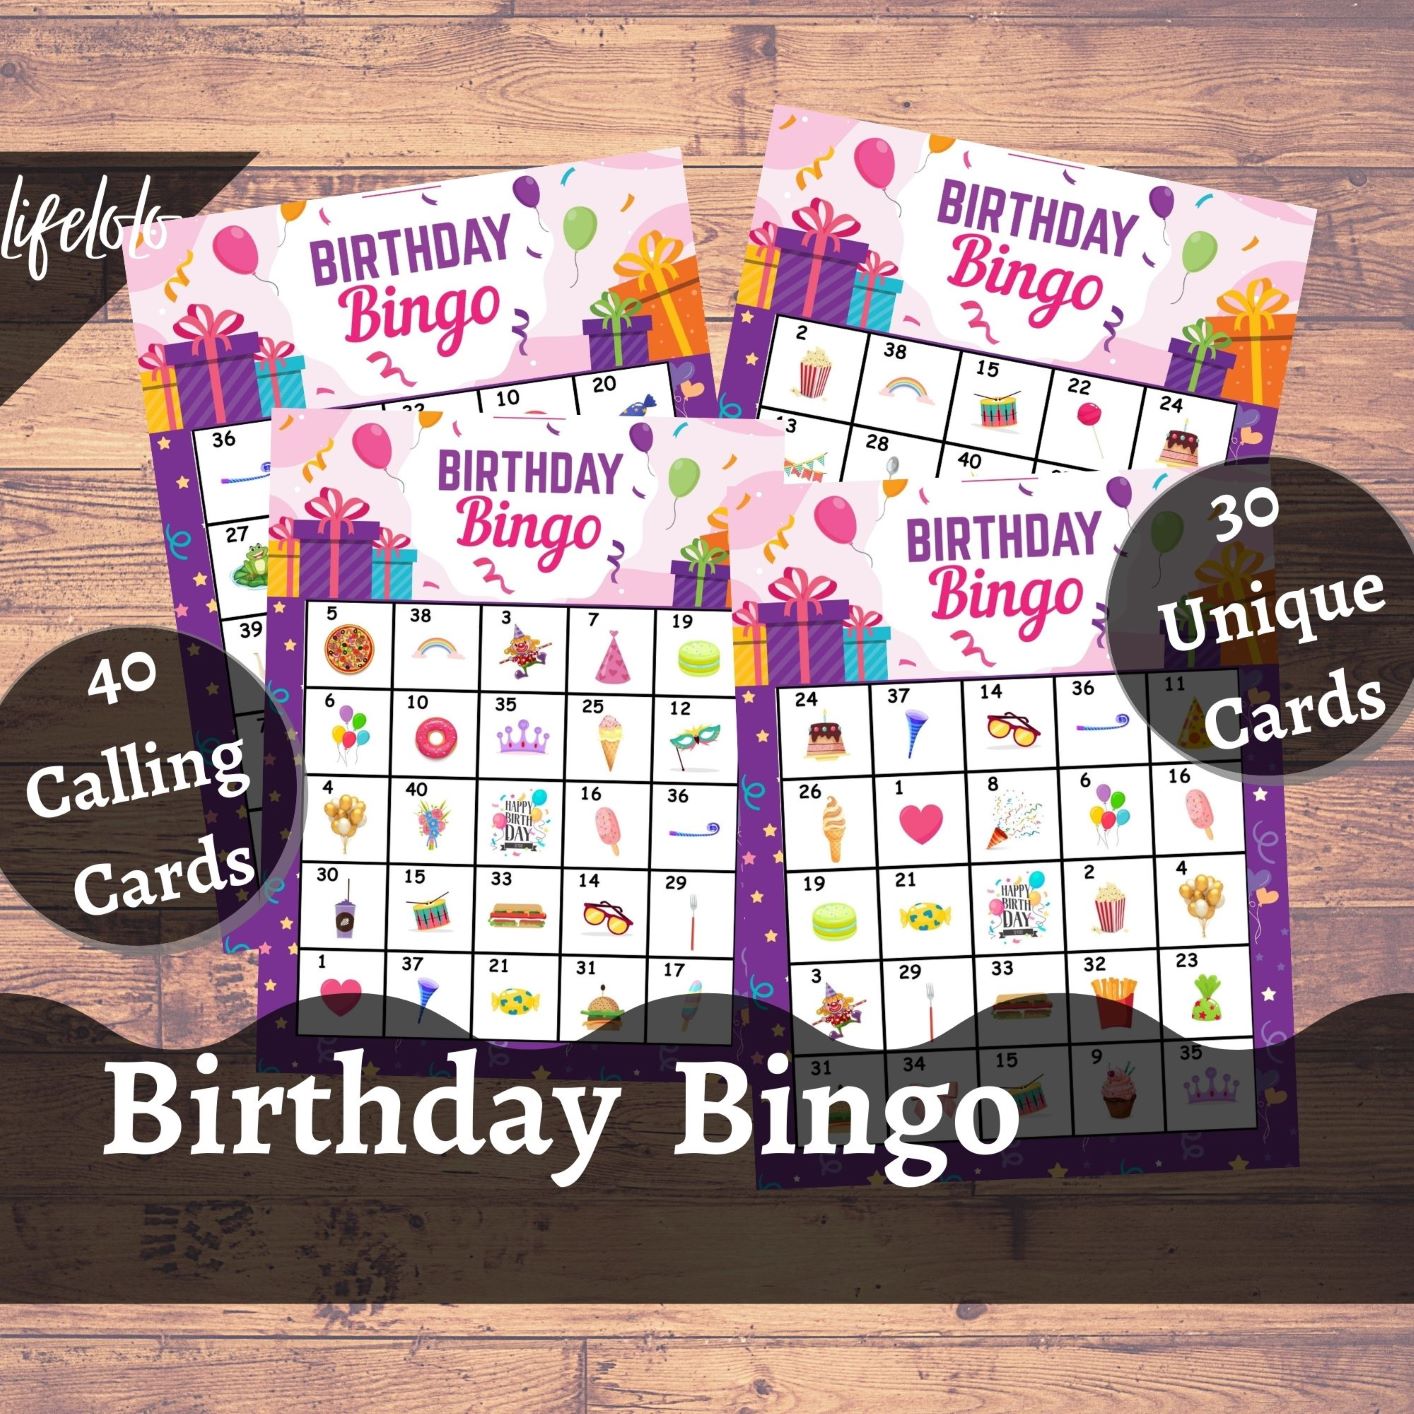 birthday-bingo-printable-printable-world-holiday